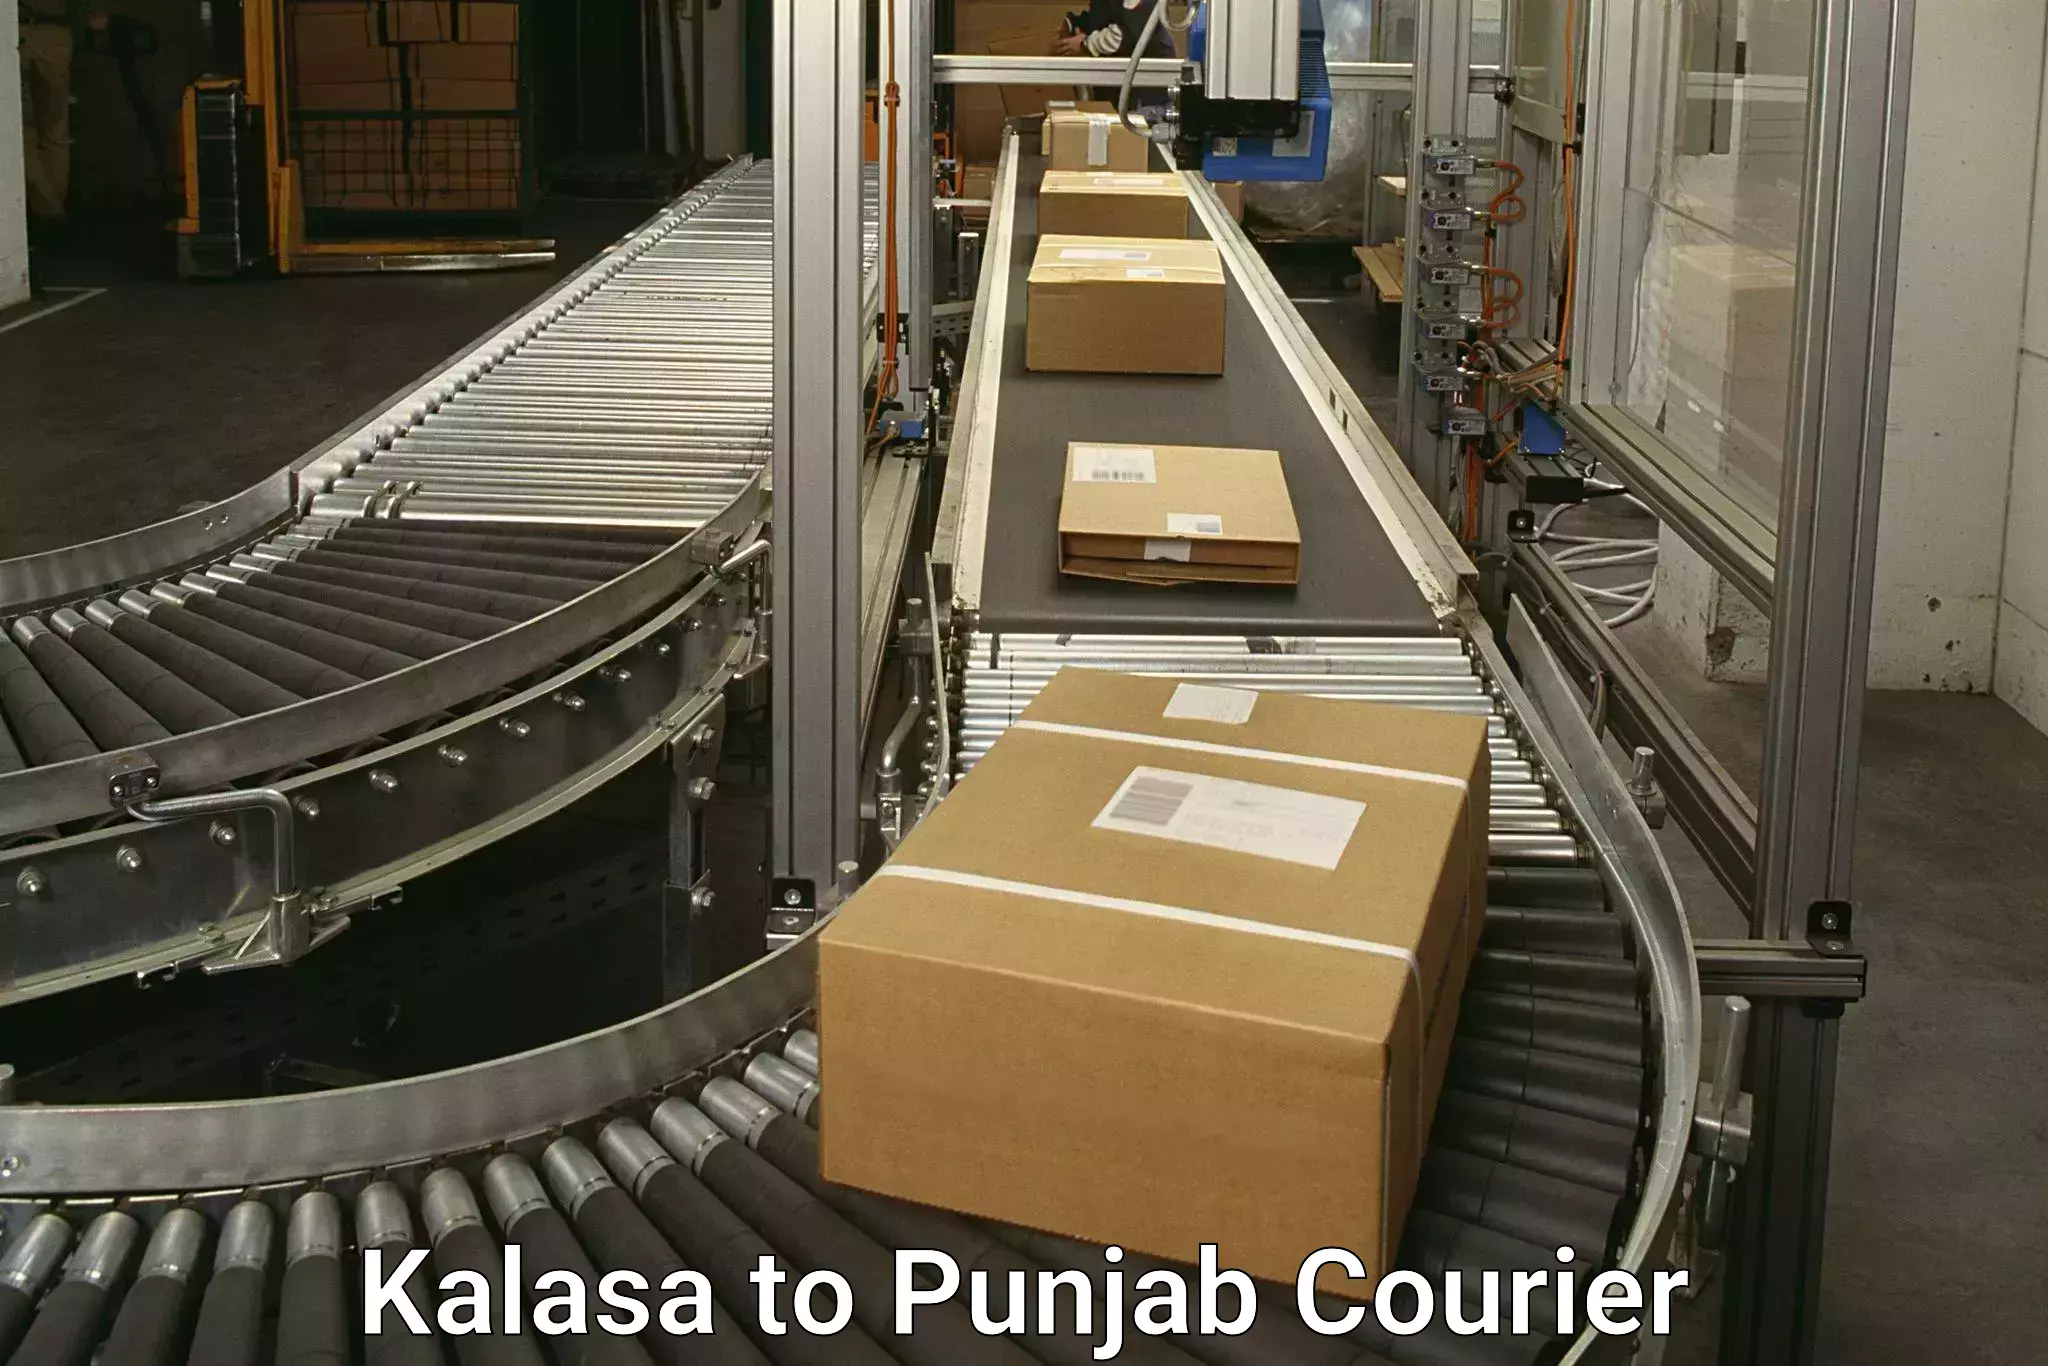 Courier services Kalasa to Ajnala